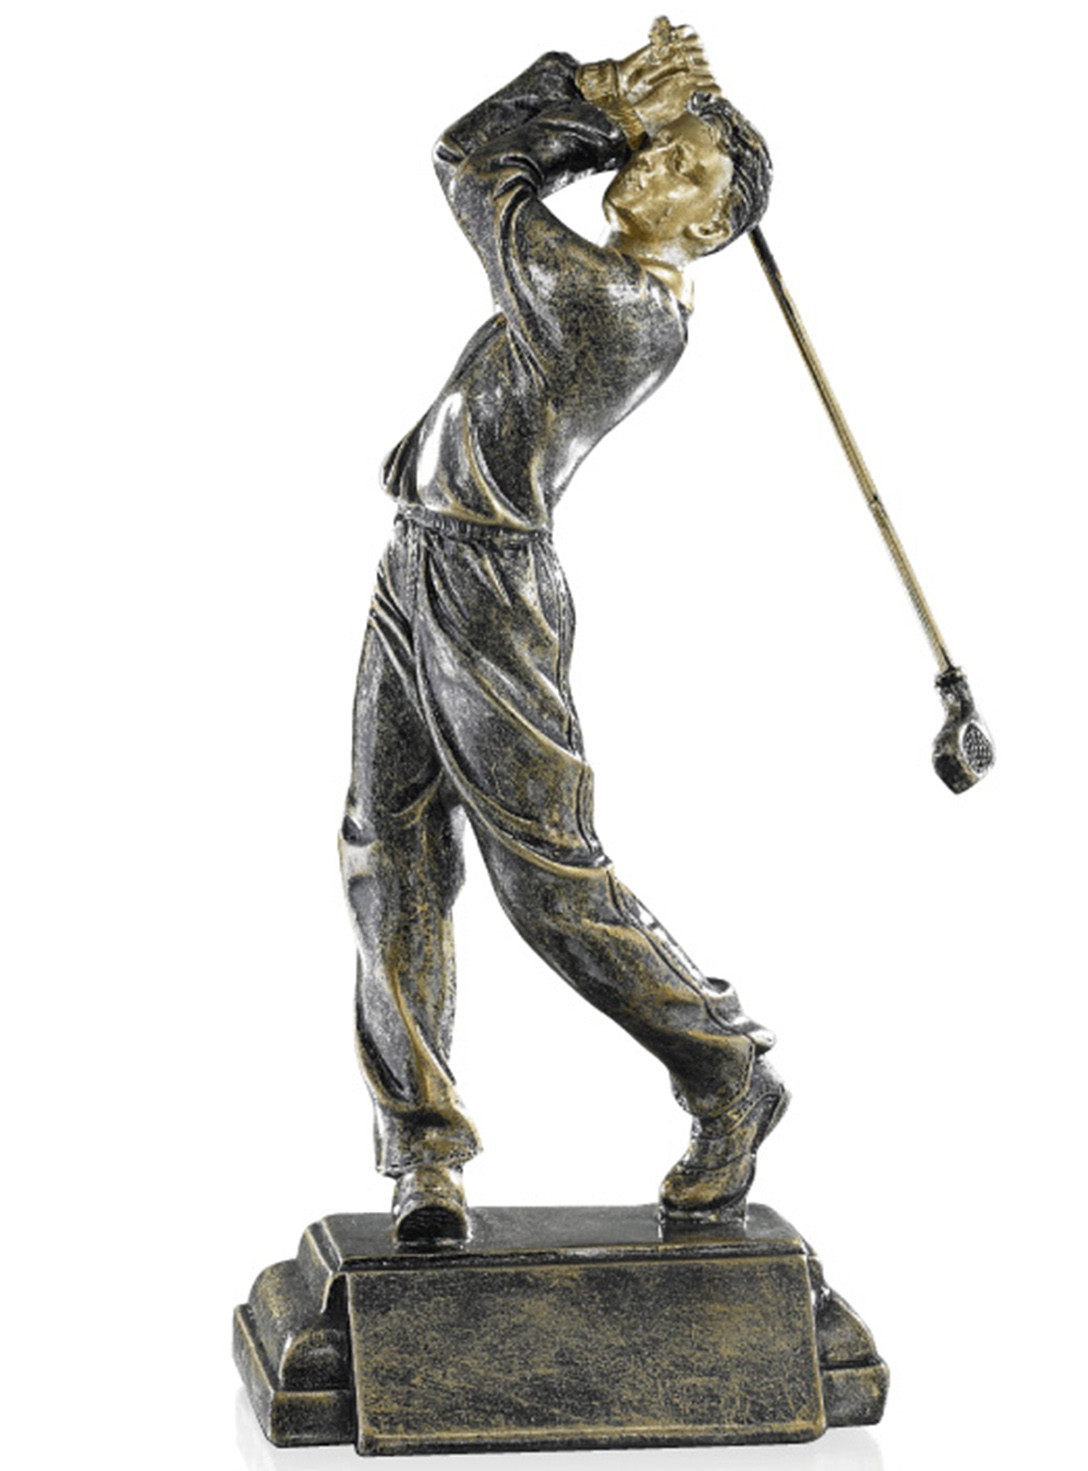 Resinfigur Golfspieler 24cm